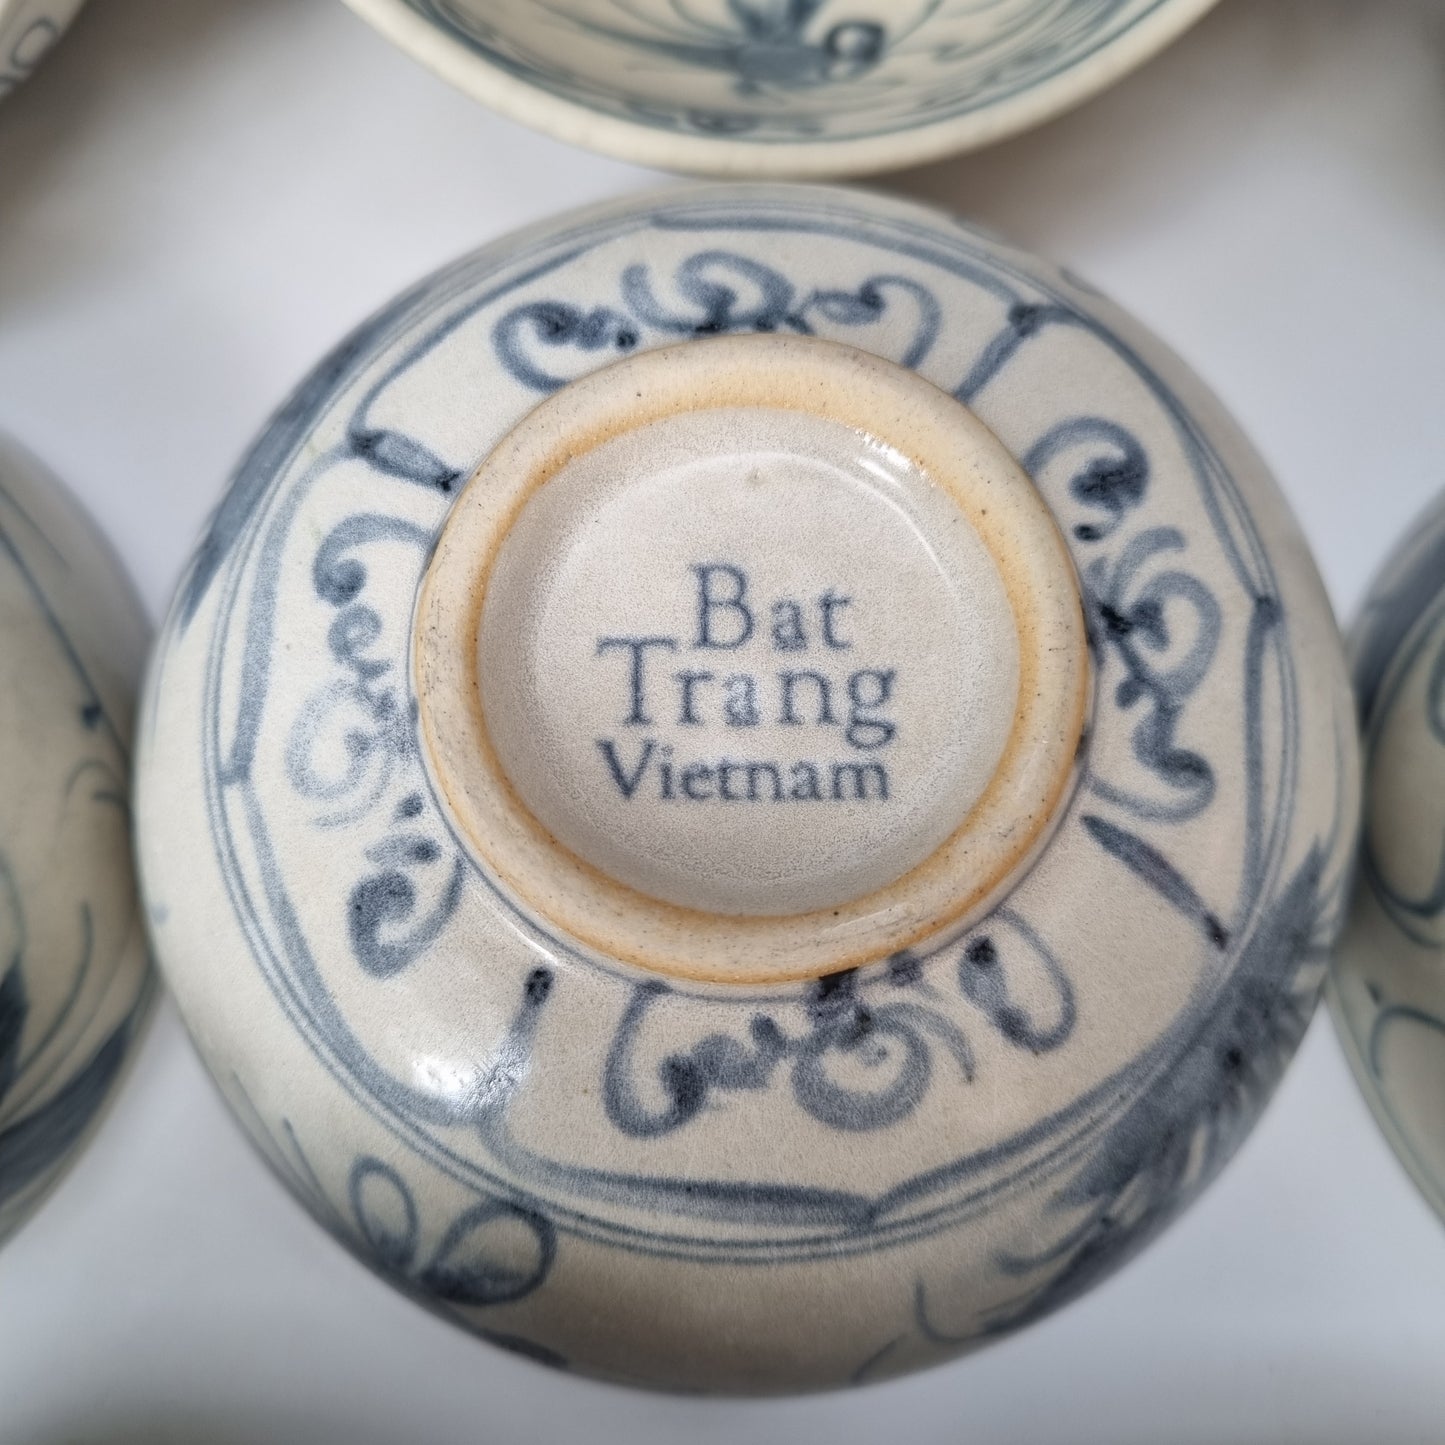 8 bowls Bat Trang, Vietnam